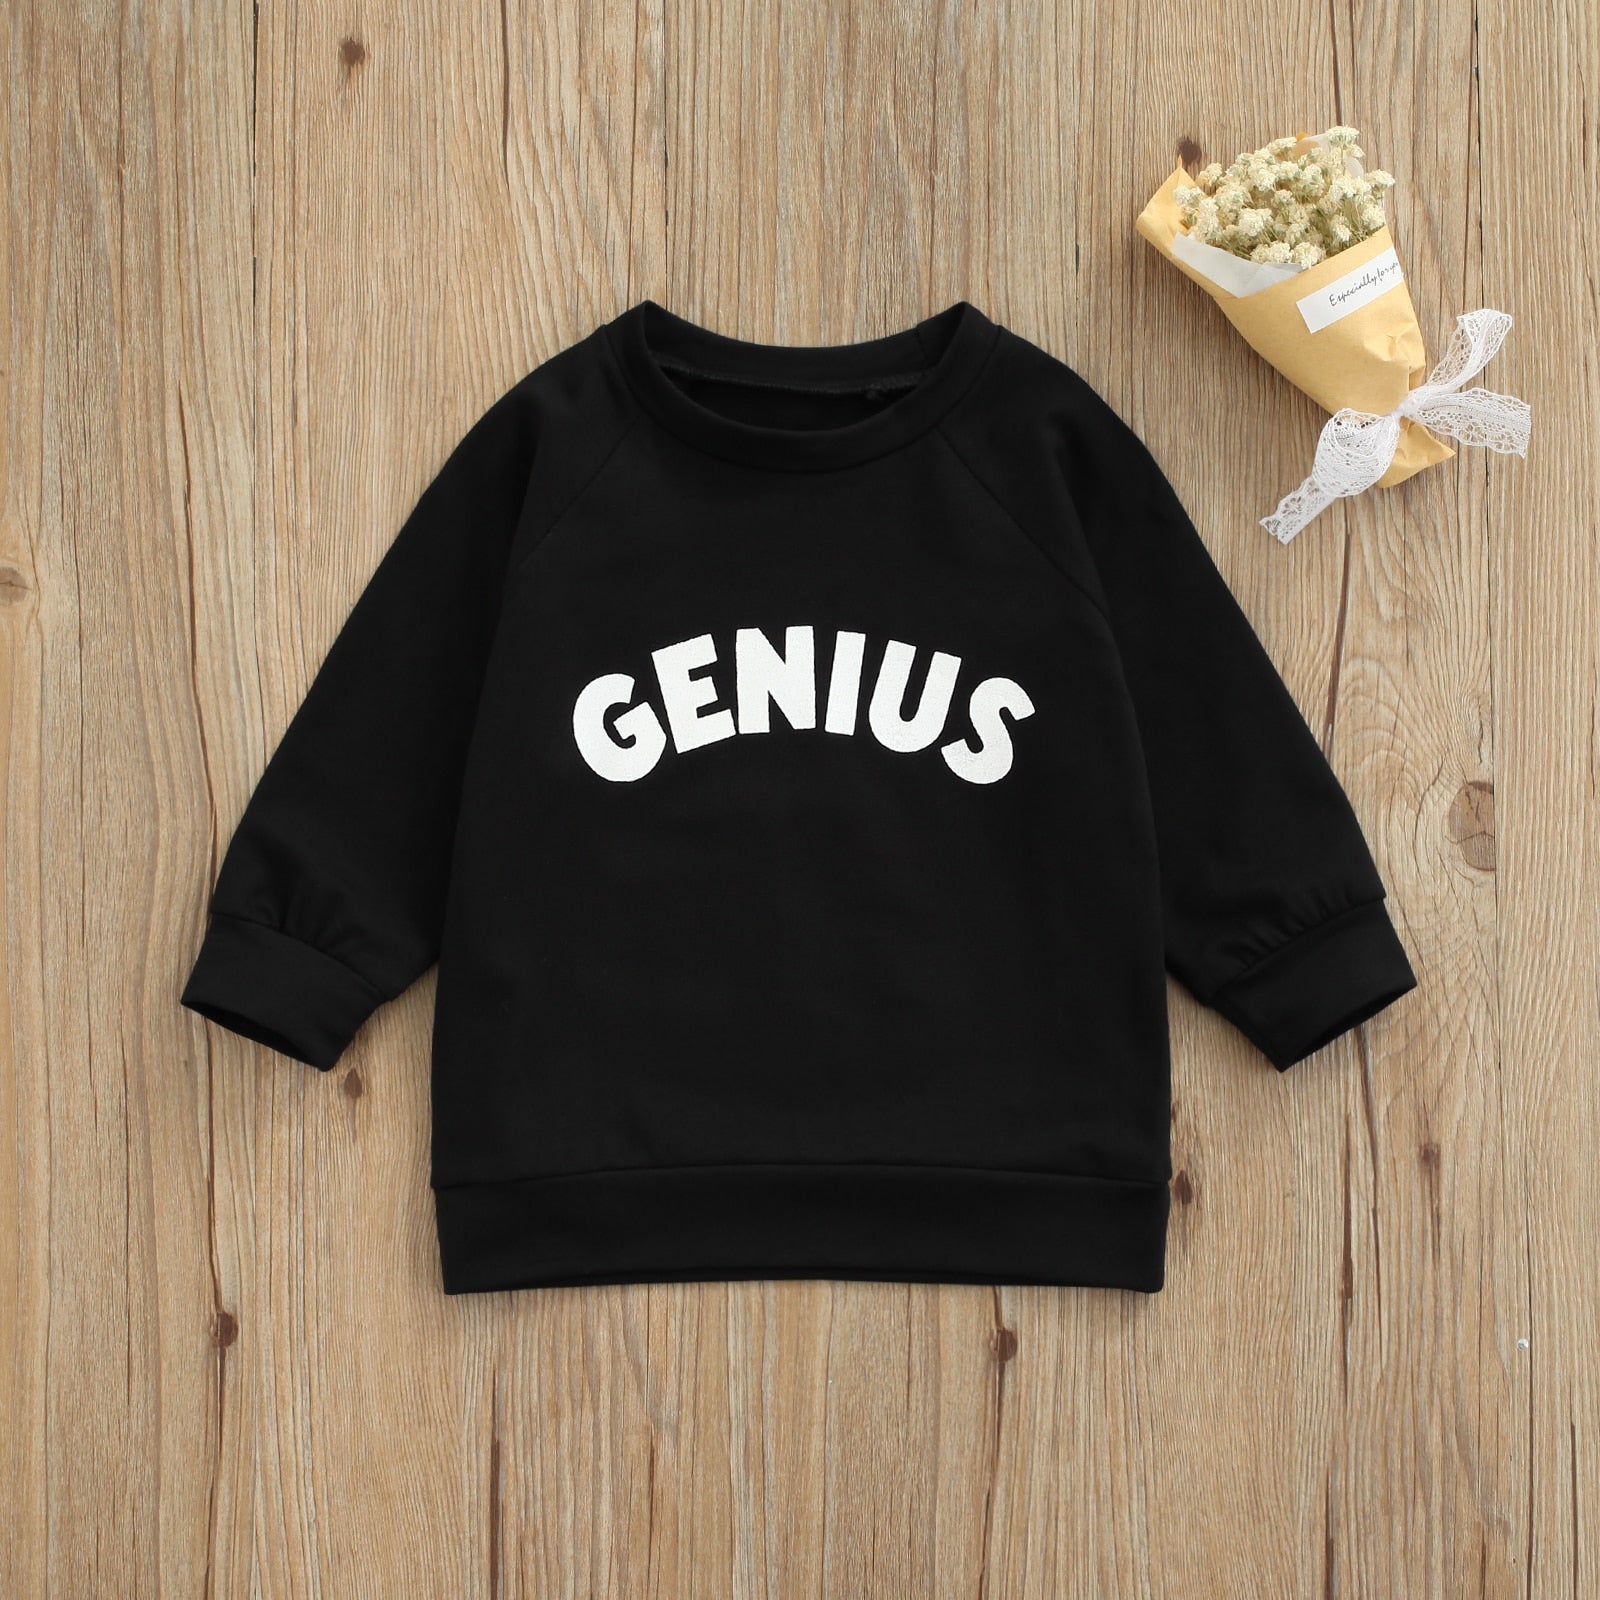 Little Genius Sweatshirt